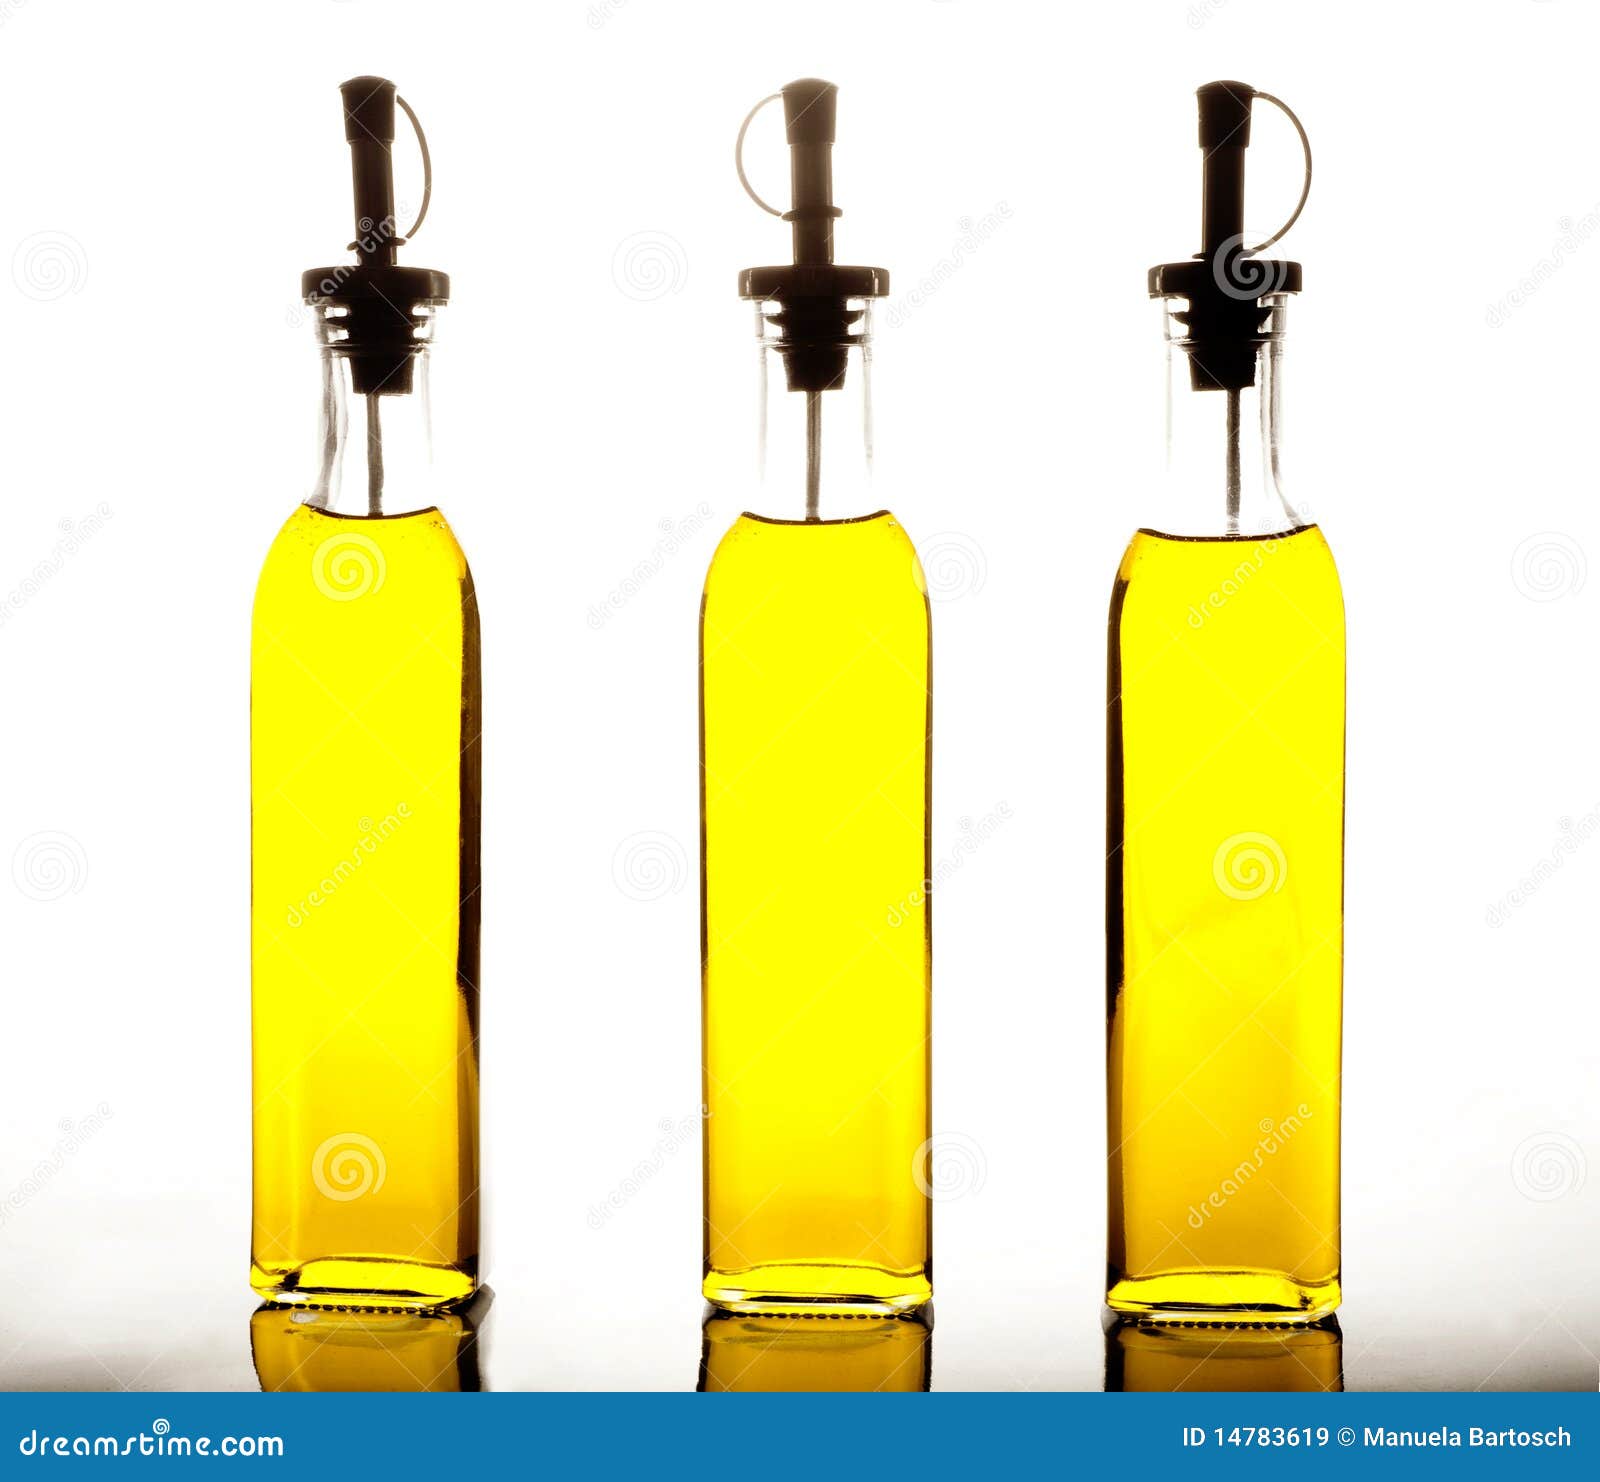 Bottles of olive oil on white background